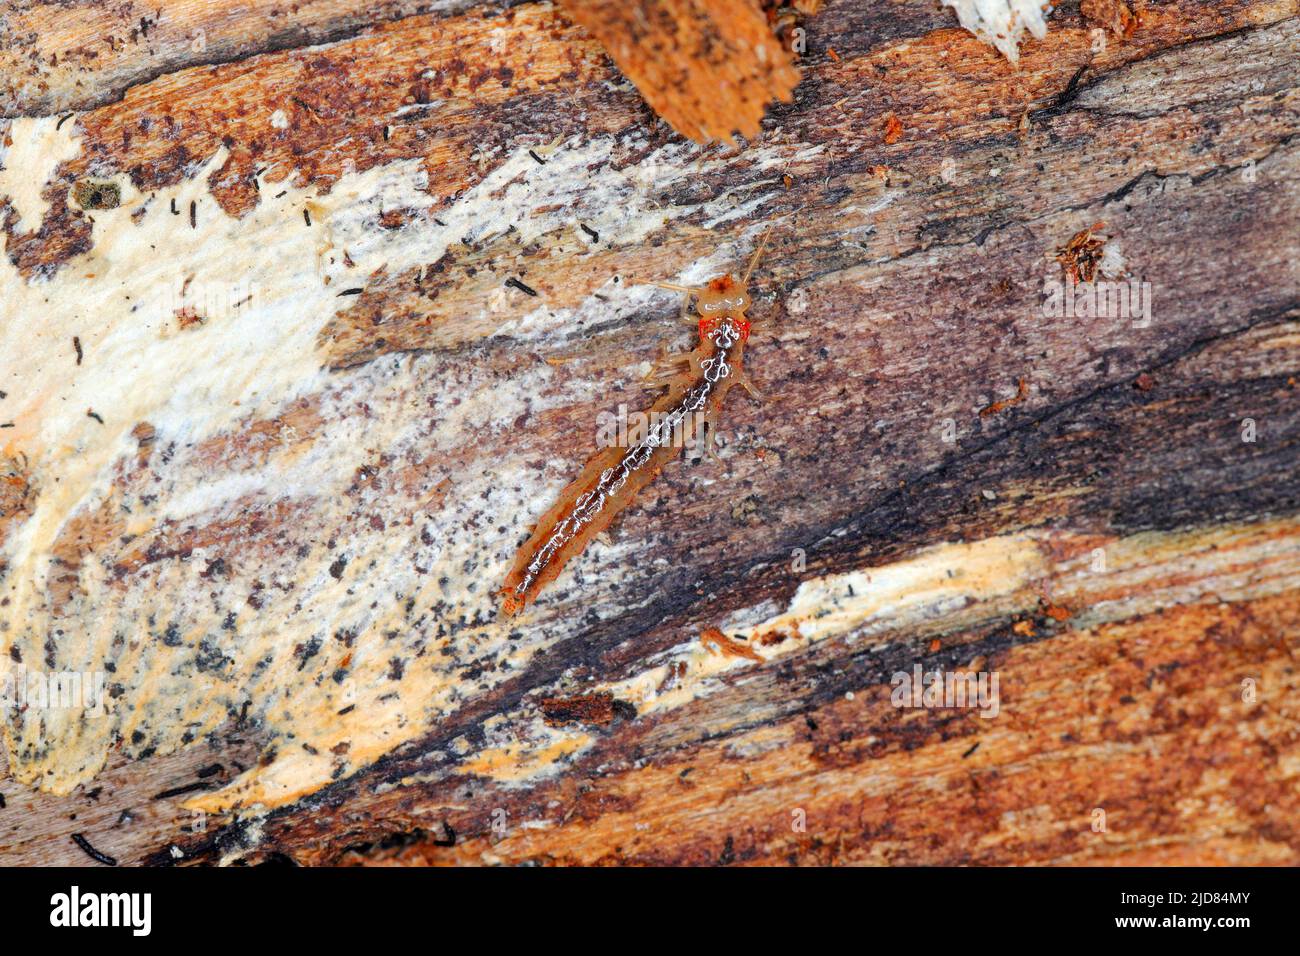 La larva del coleottero della famiglia degli scarabei (Staphylinidae) sotto corteccia. Sono agili cacciatori di peste Foto Stock